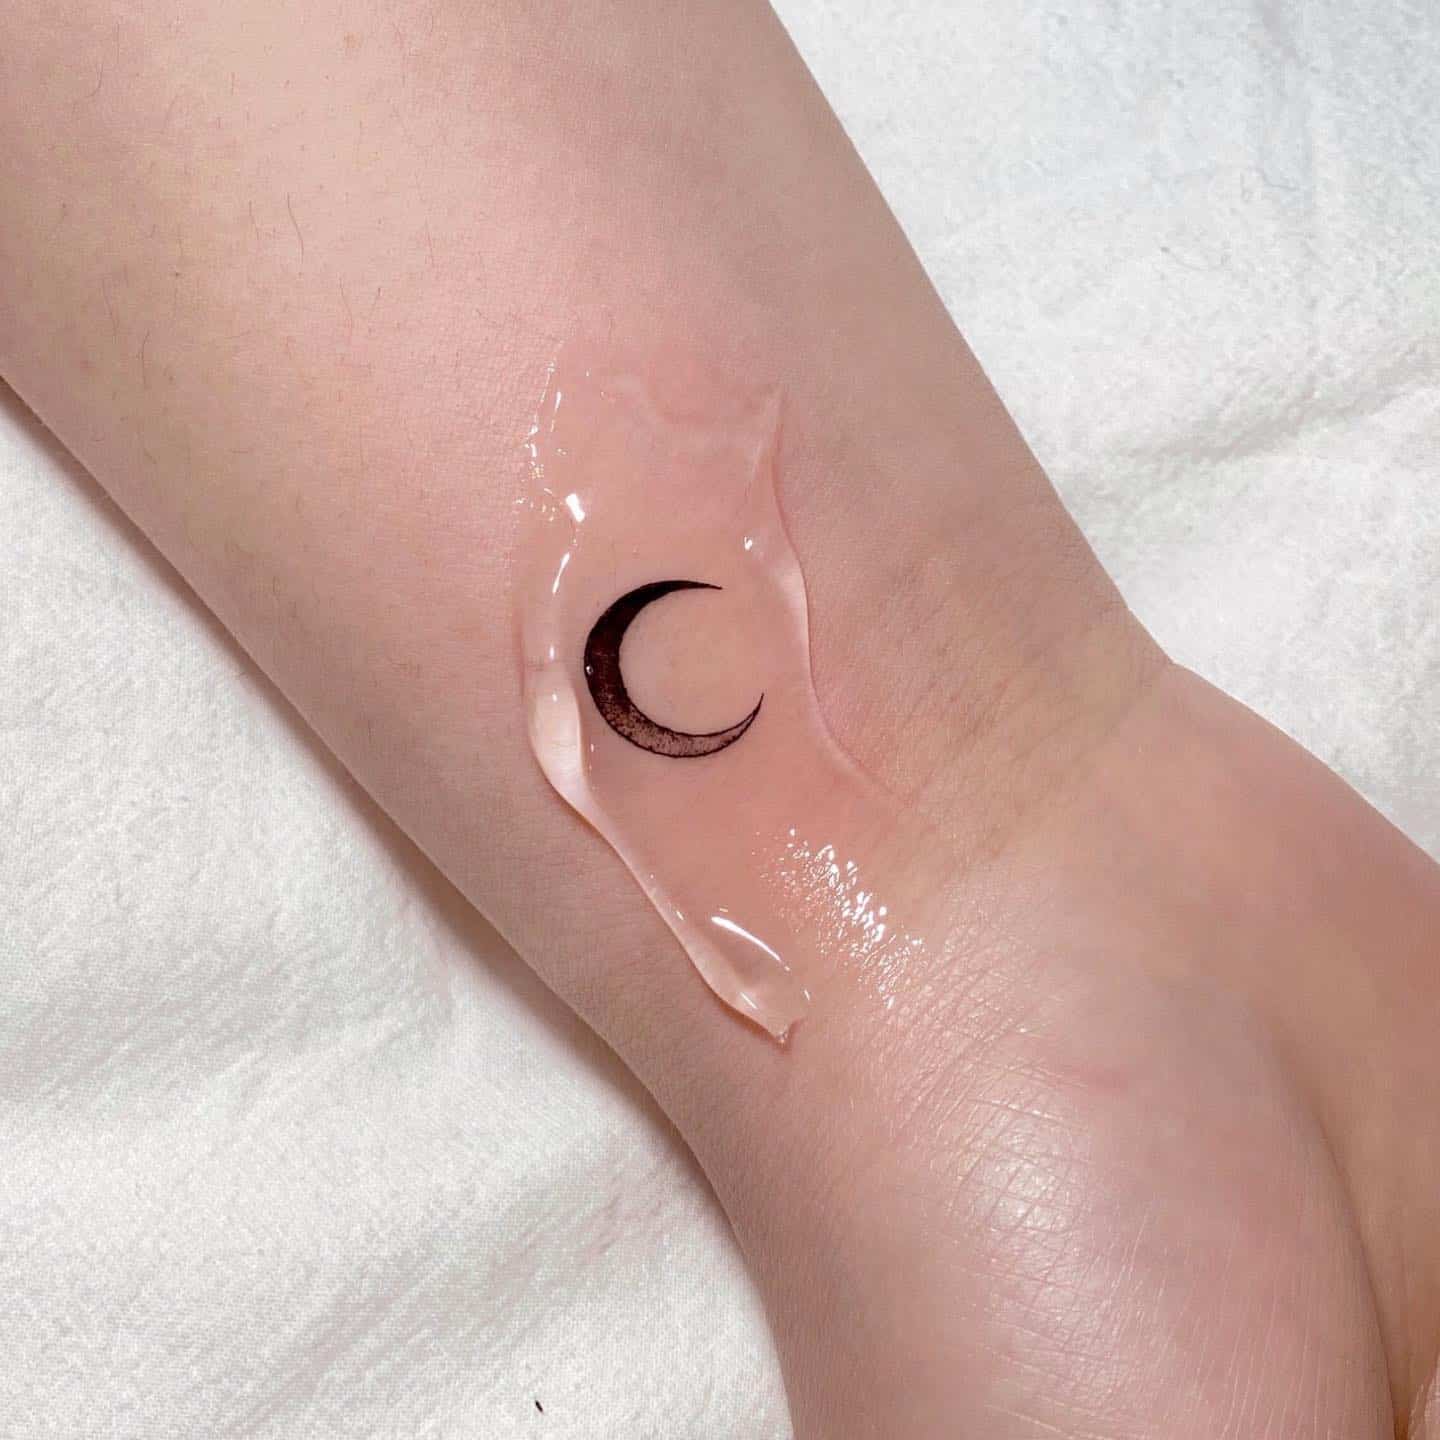 Fineline moon tattoo by jjun tattoo